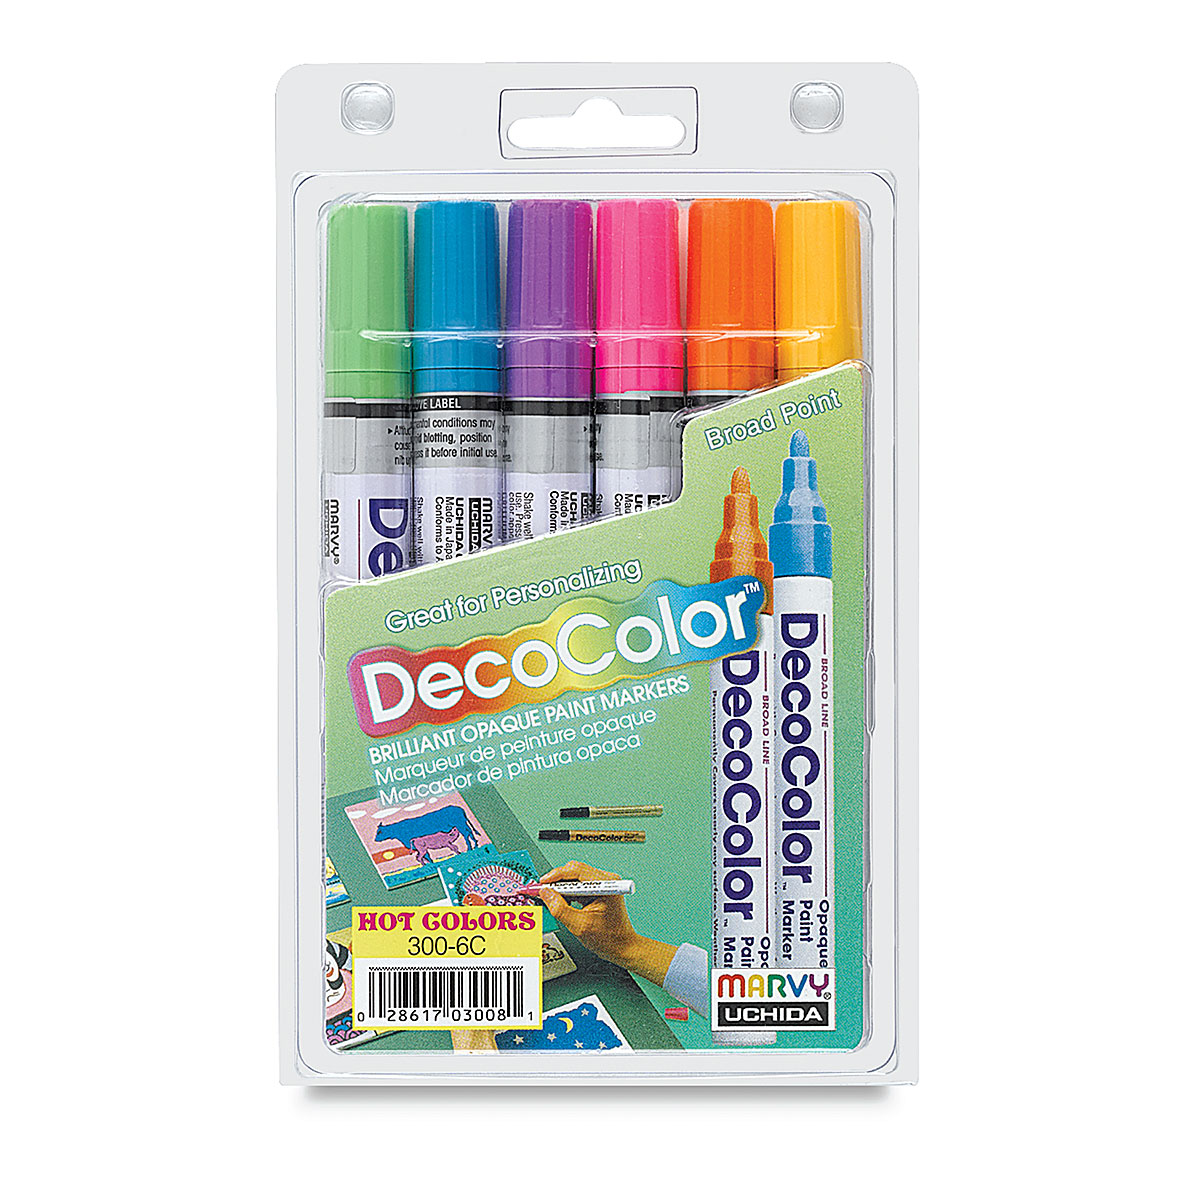 DecoColor Outliner